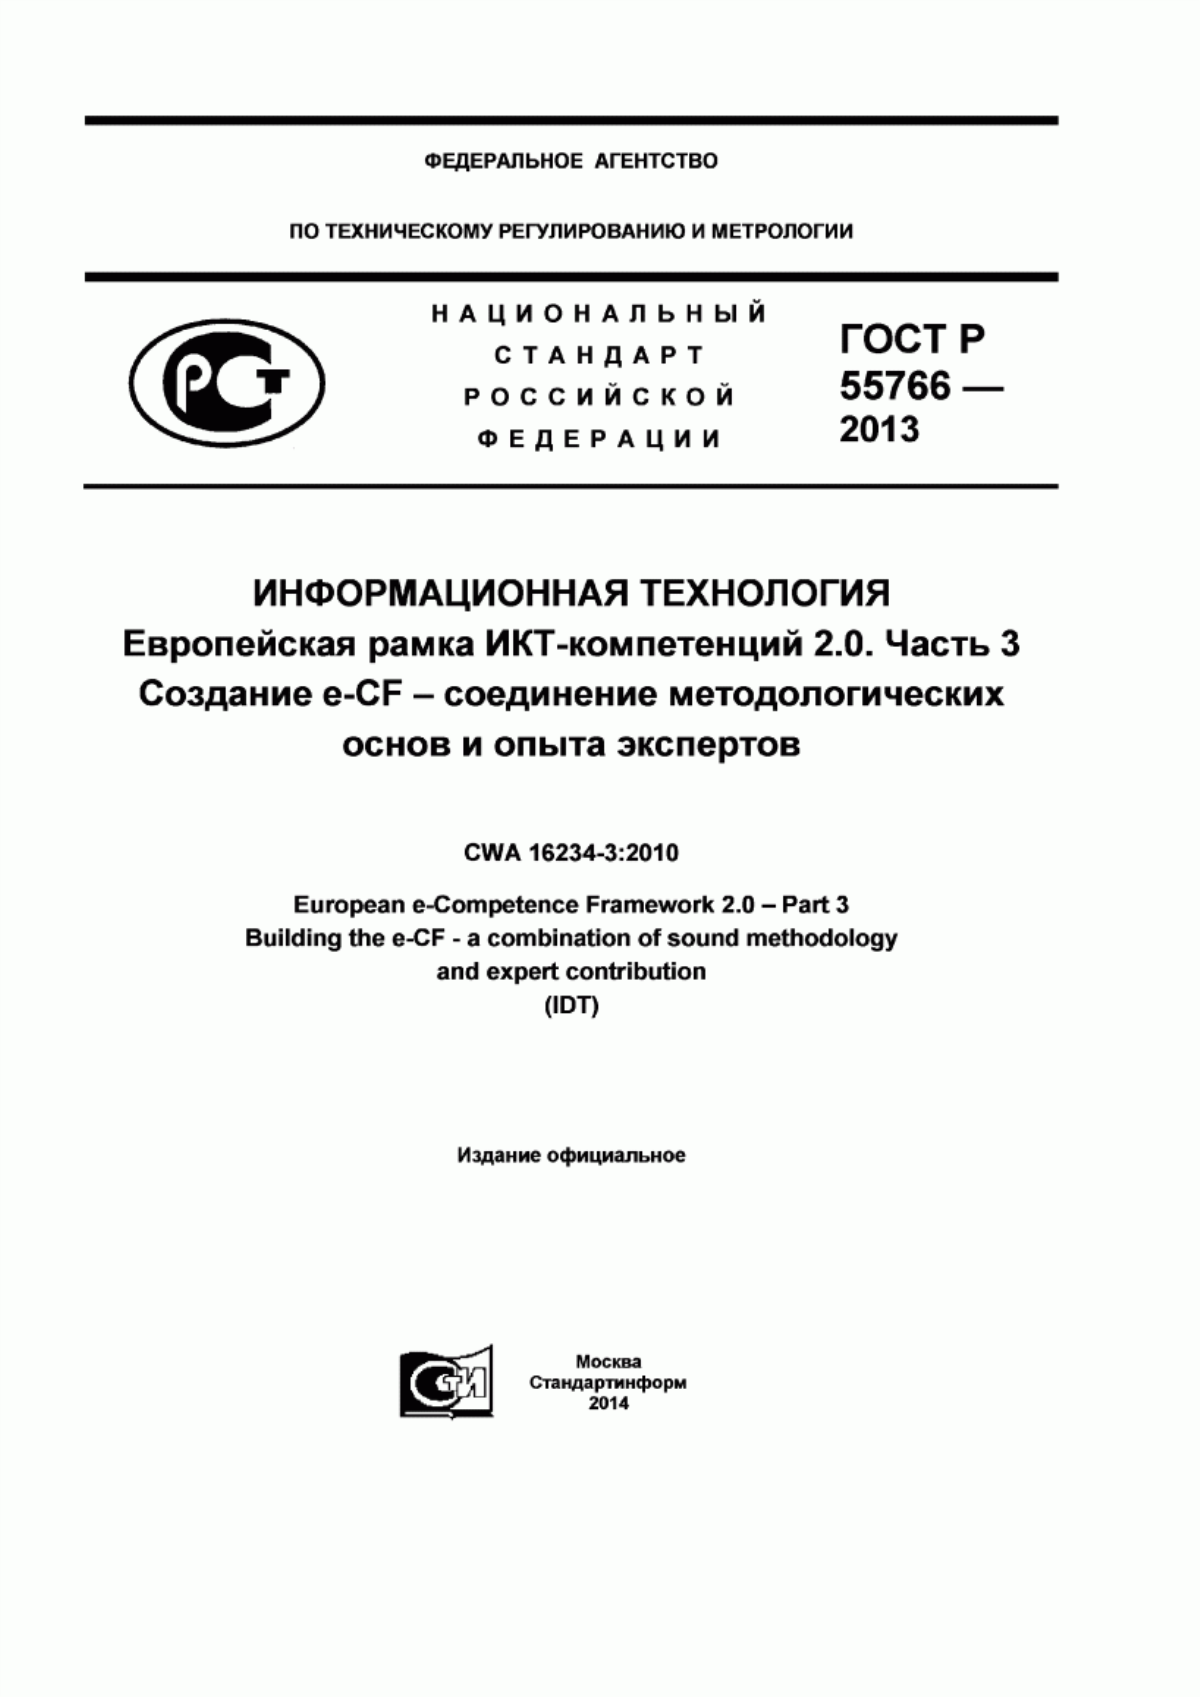 ГОСТ Р 55766-2013 Информационная технология. Европейская рамка ИКТ-компетенций 2.0. Часть 3. Создание e-CF - соединение методологических основ и опыта экспертов